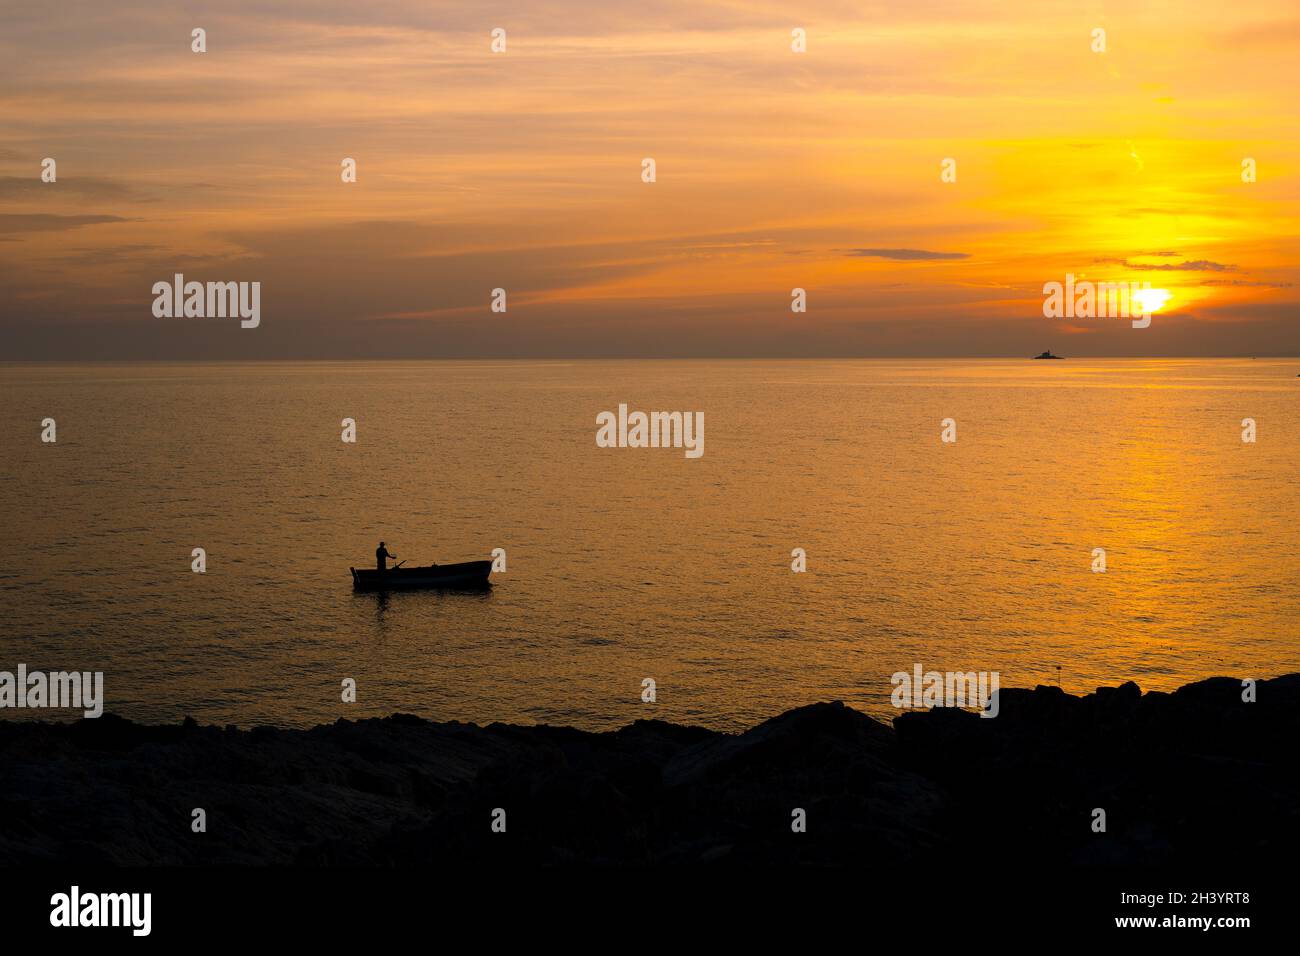 Ein Fischer auf einem Boot in der Nähe des Ufers vor dem Hintergrund eines goldenen Sonnenuntergangs. Stockfoto